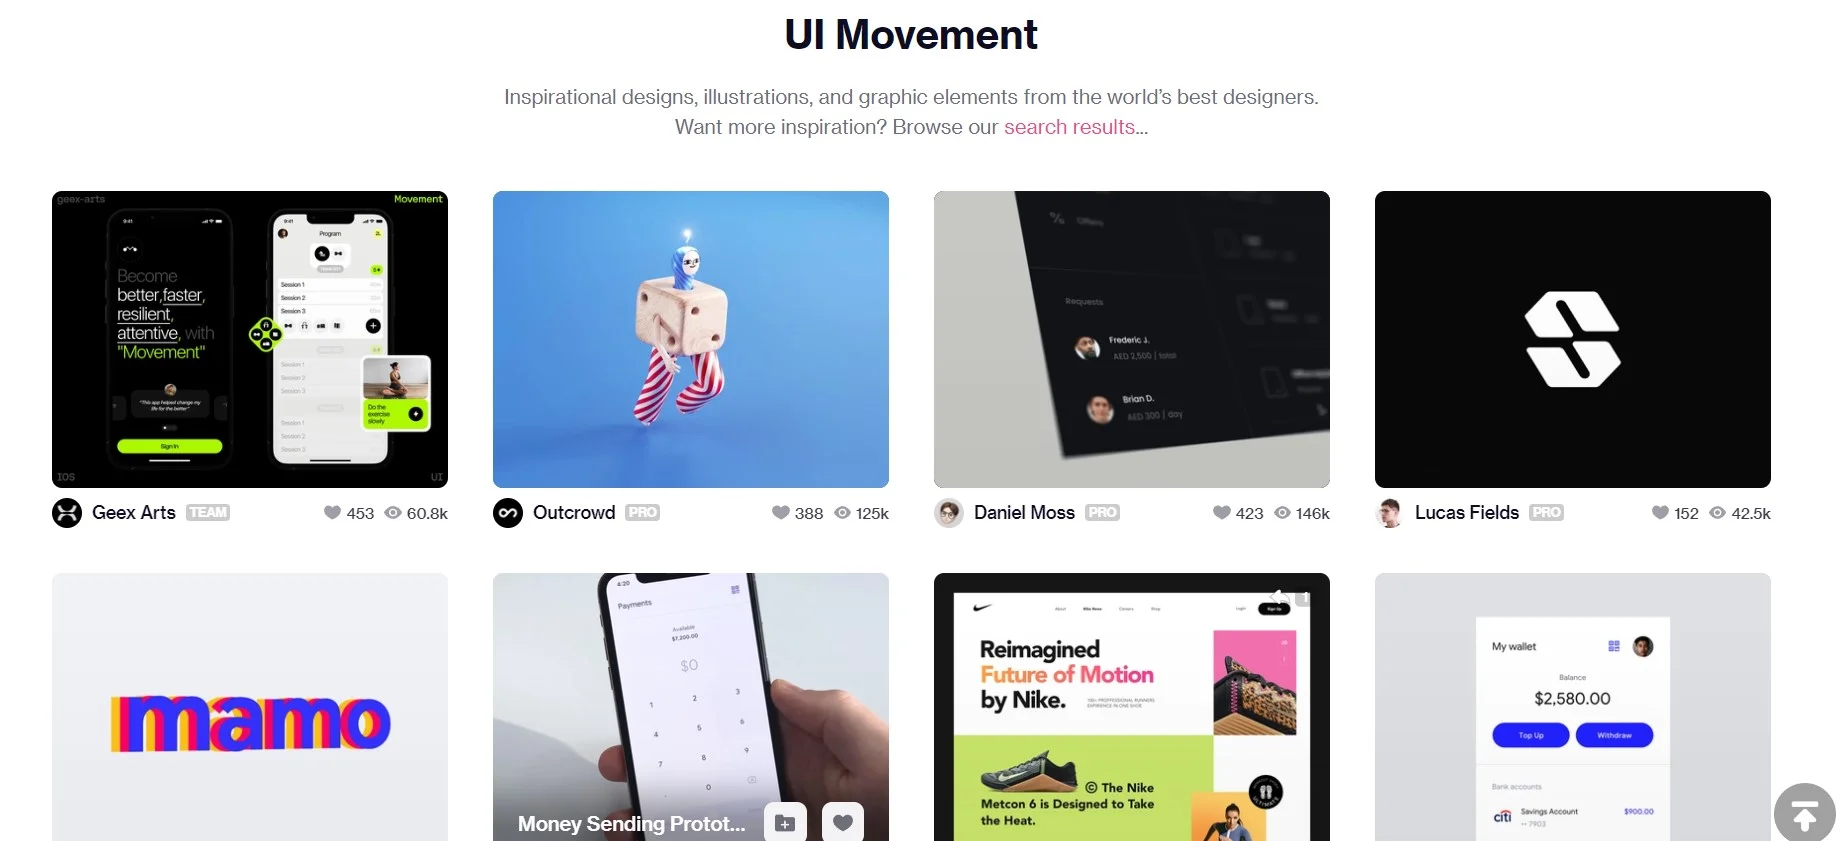 UI movement UX UI design inspiration site